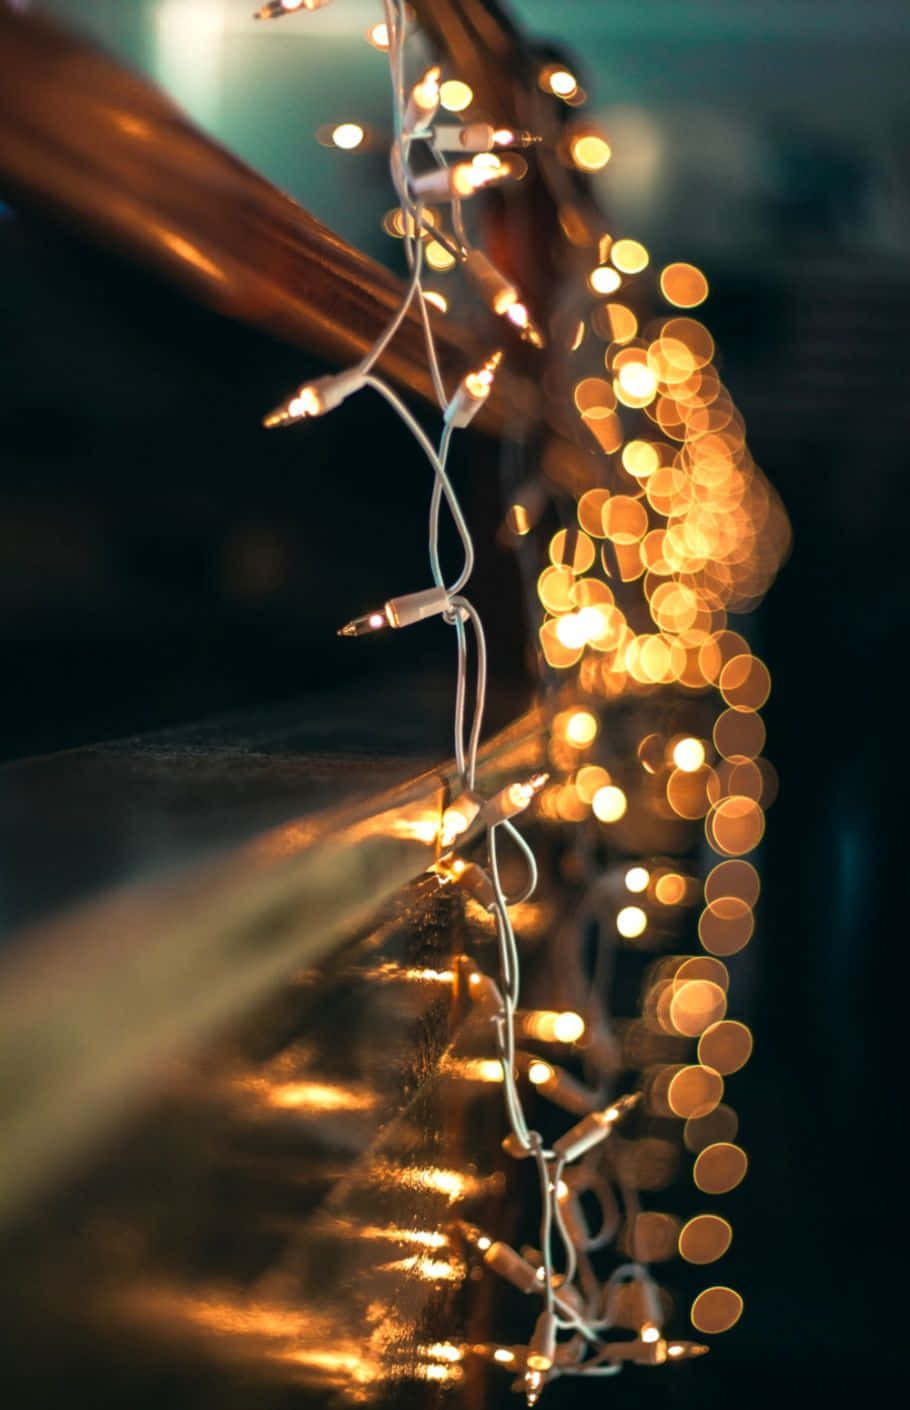 Spred julecheer dette sæson med blinkende juletræ lys! Wallpaper